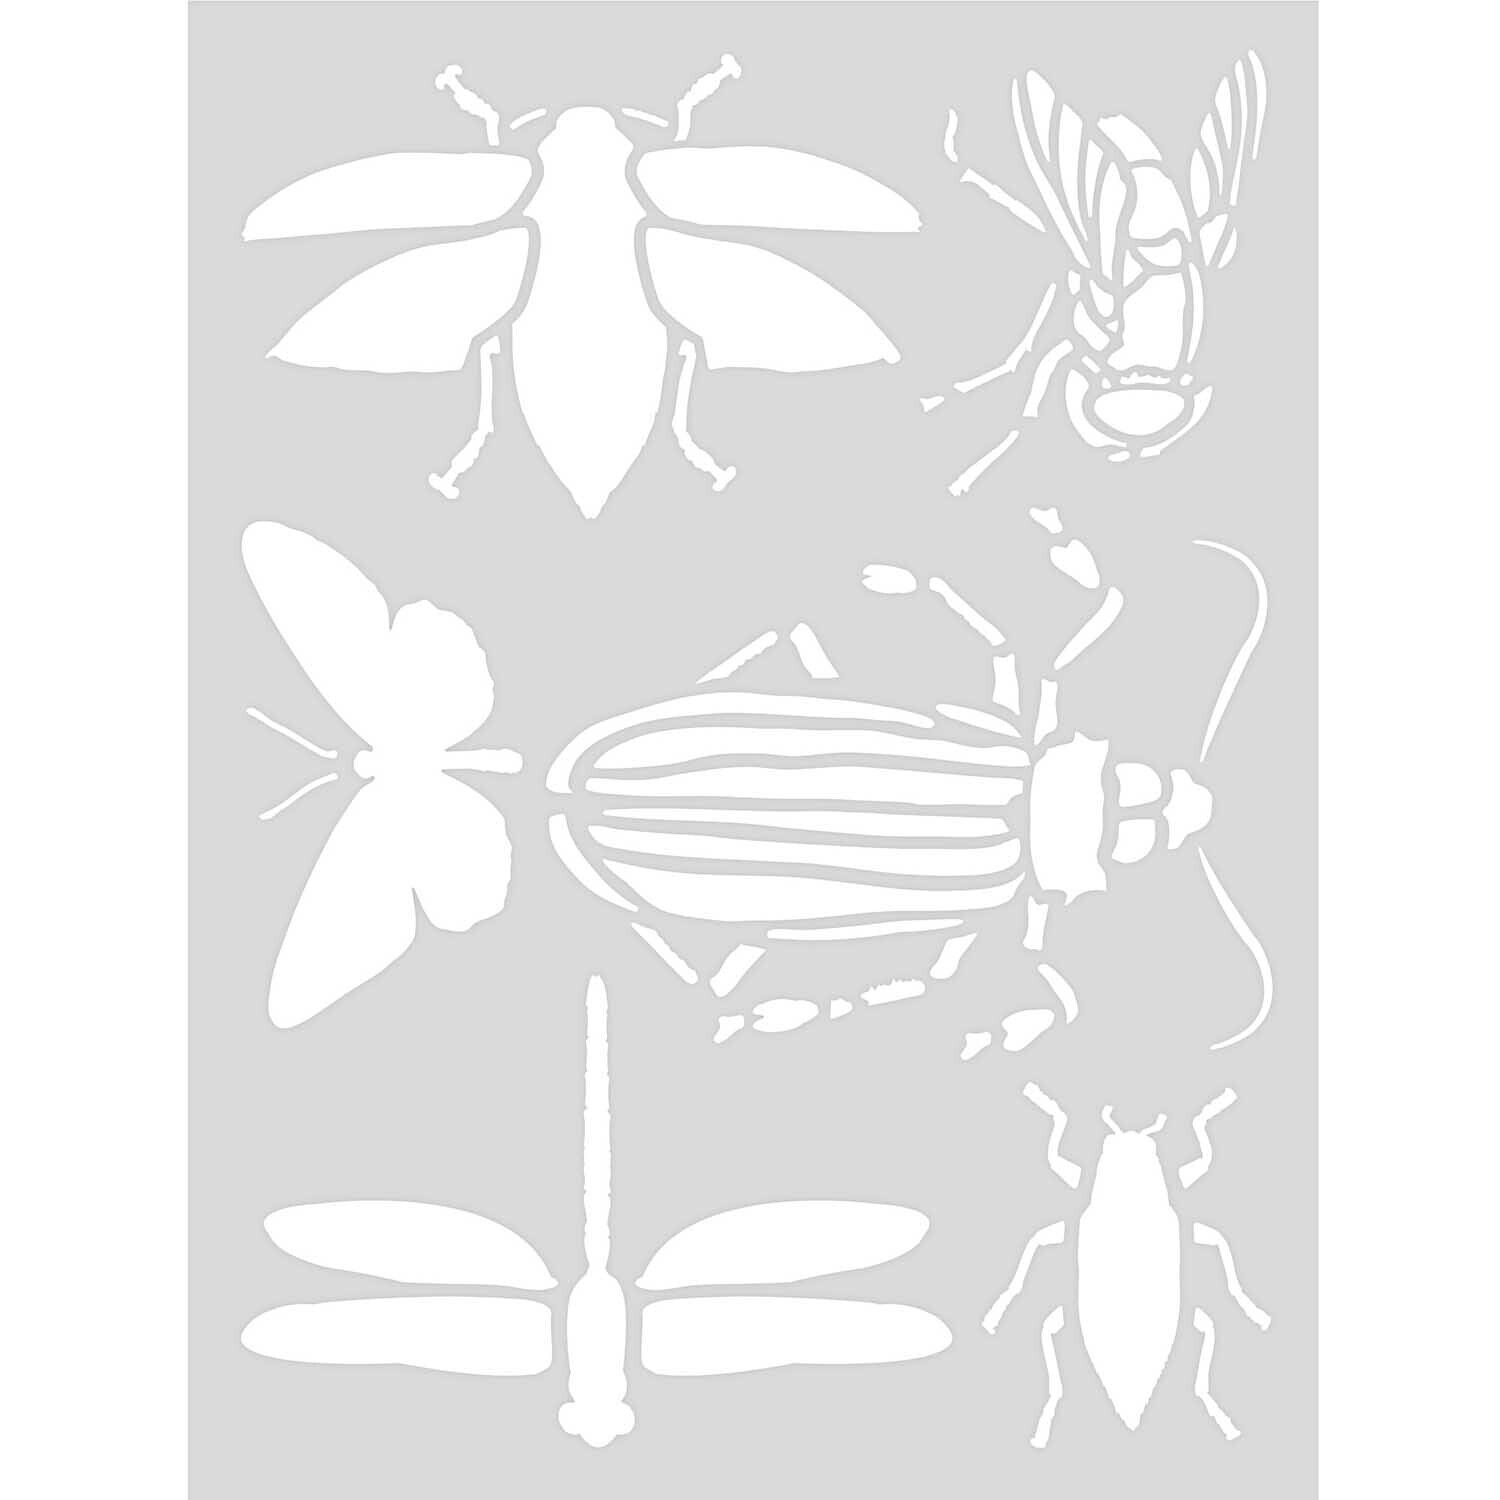 Schablone Insekten 18,5x24,5cm selbstklebend